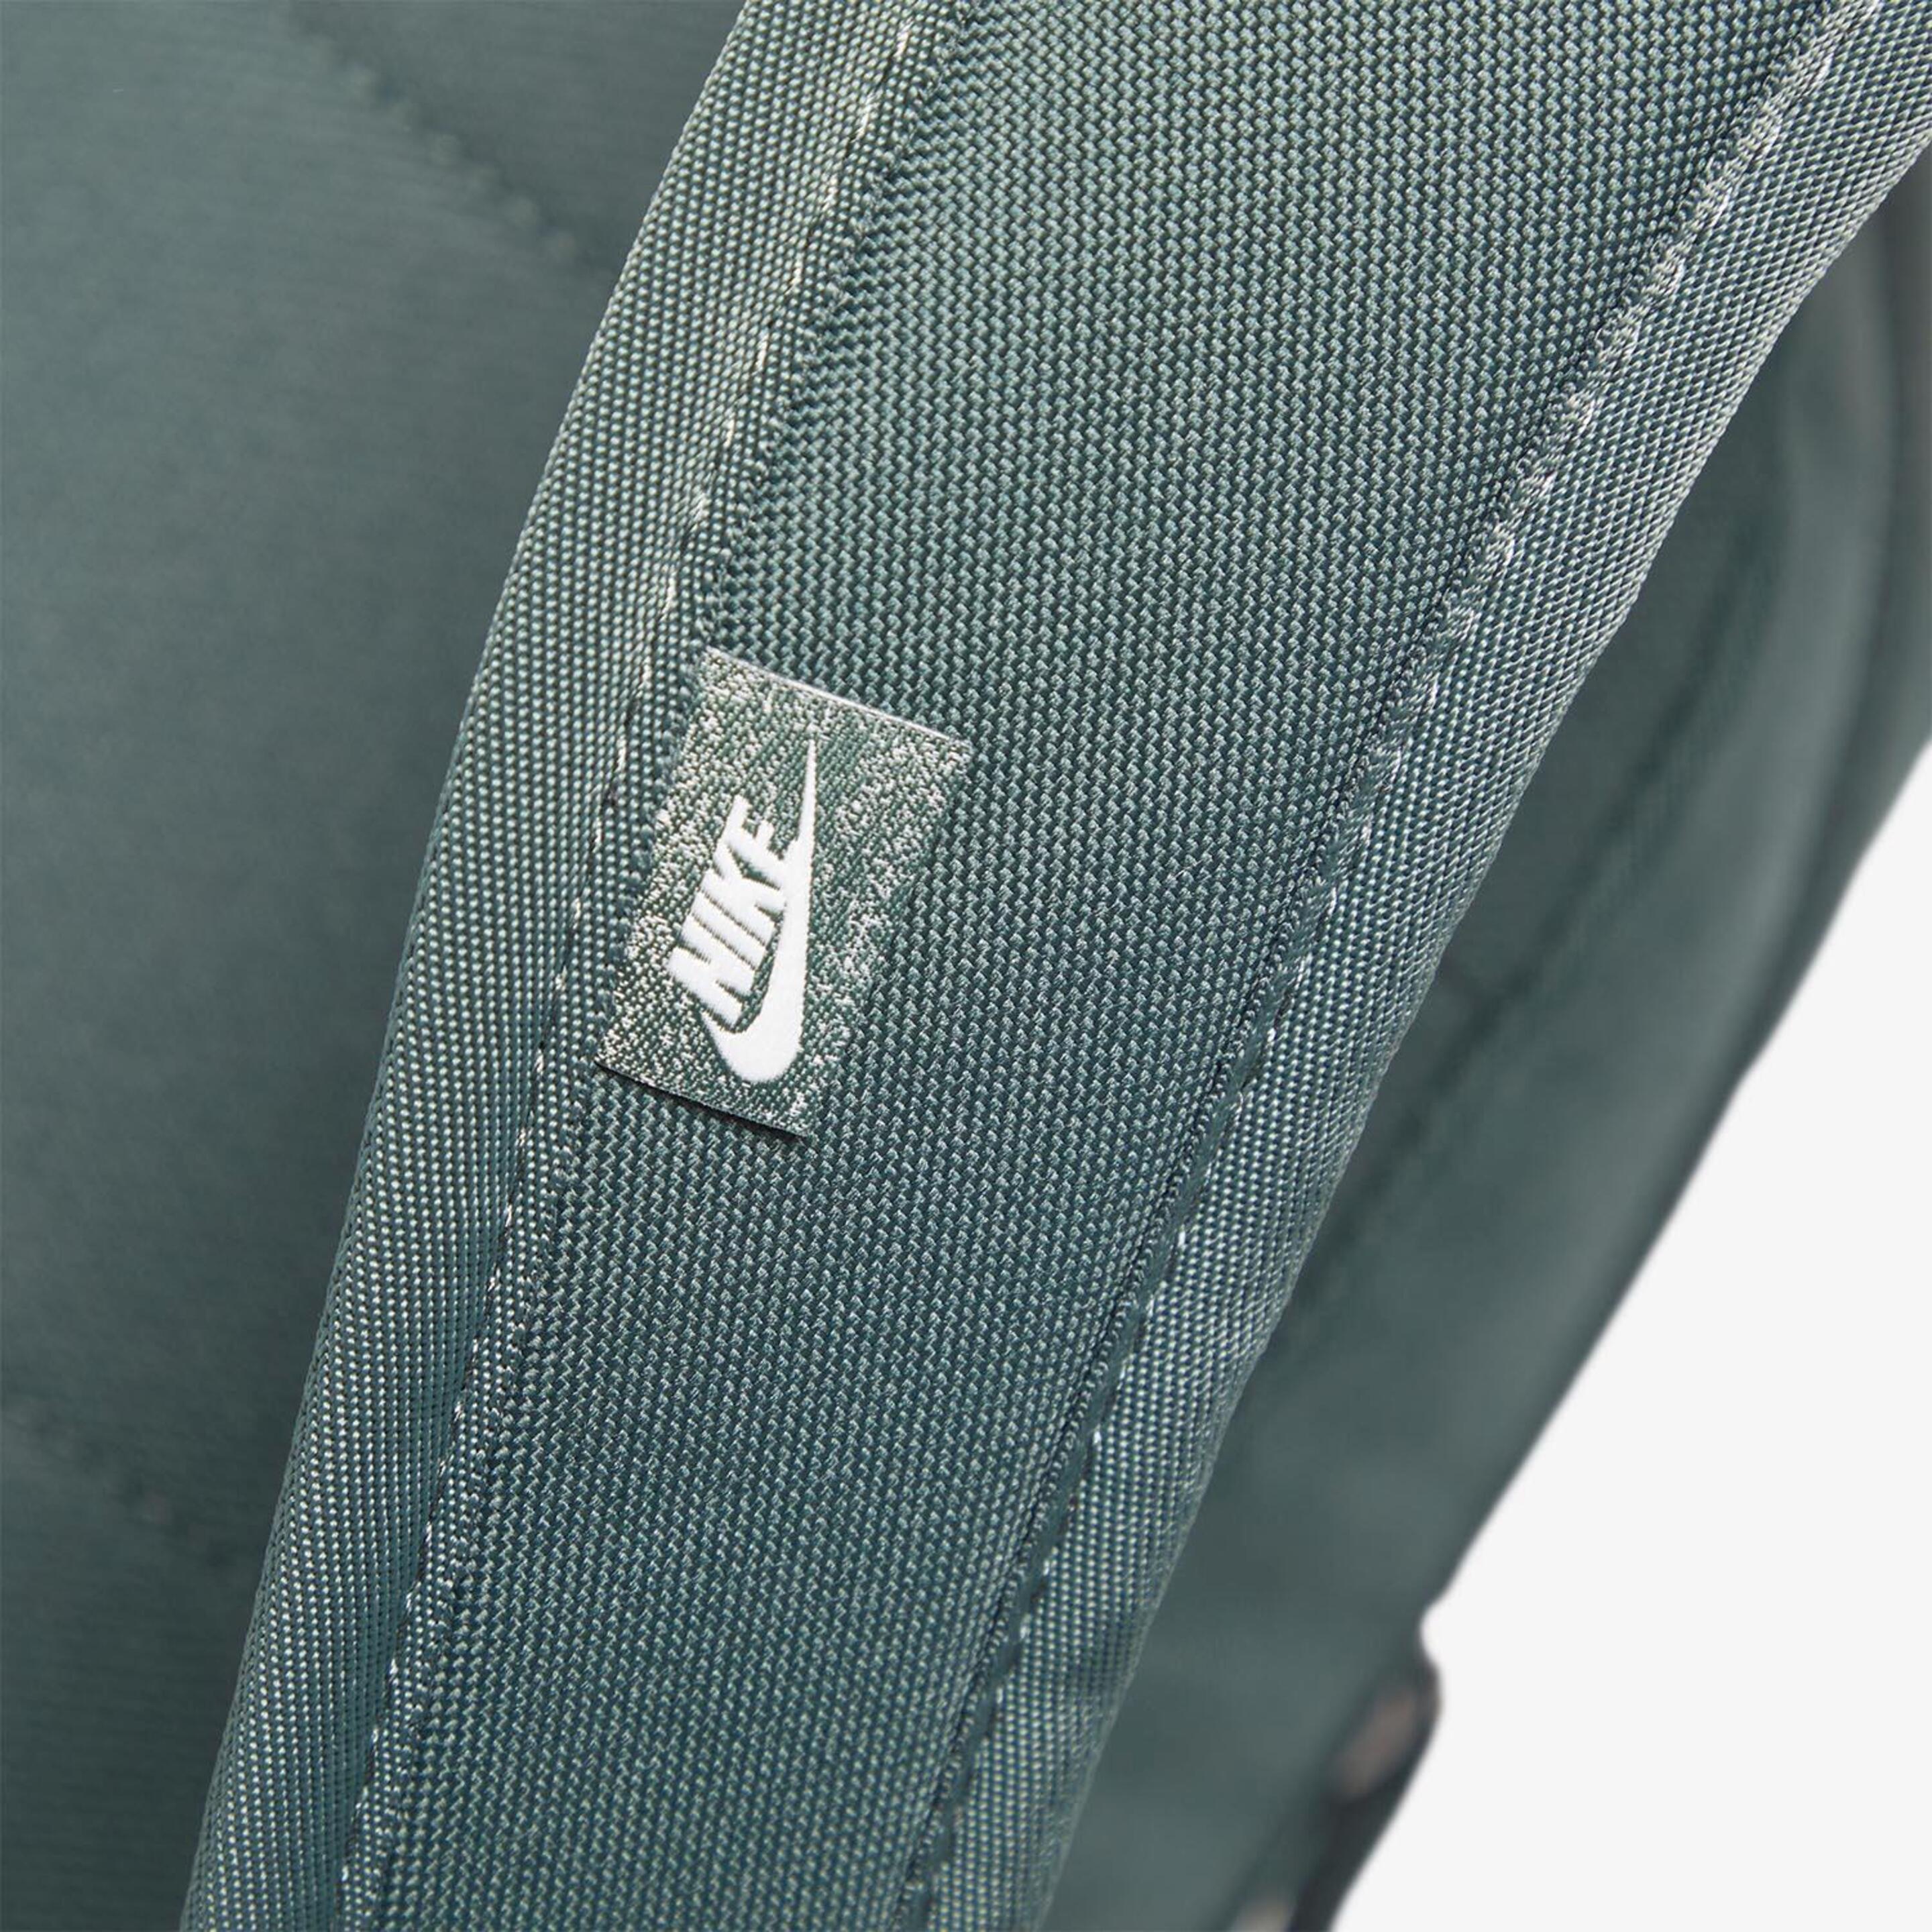 Nike Elemental - Verde - Mochila 21 L